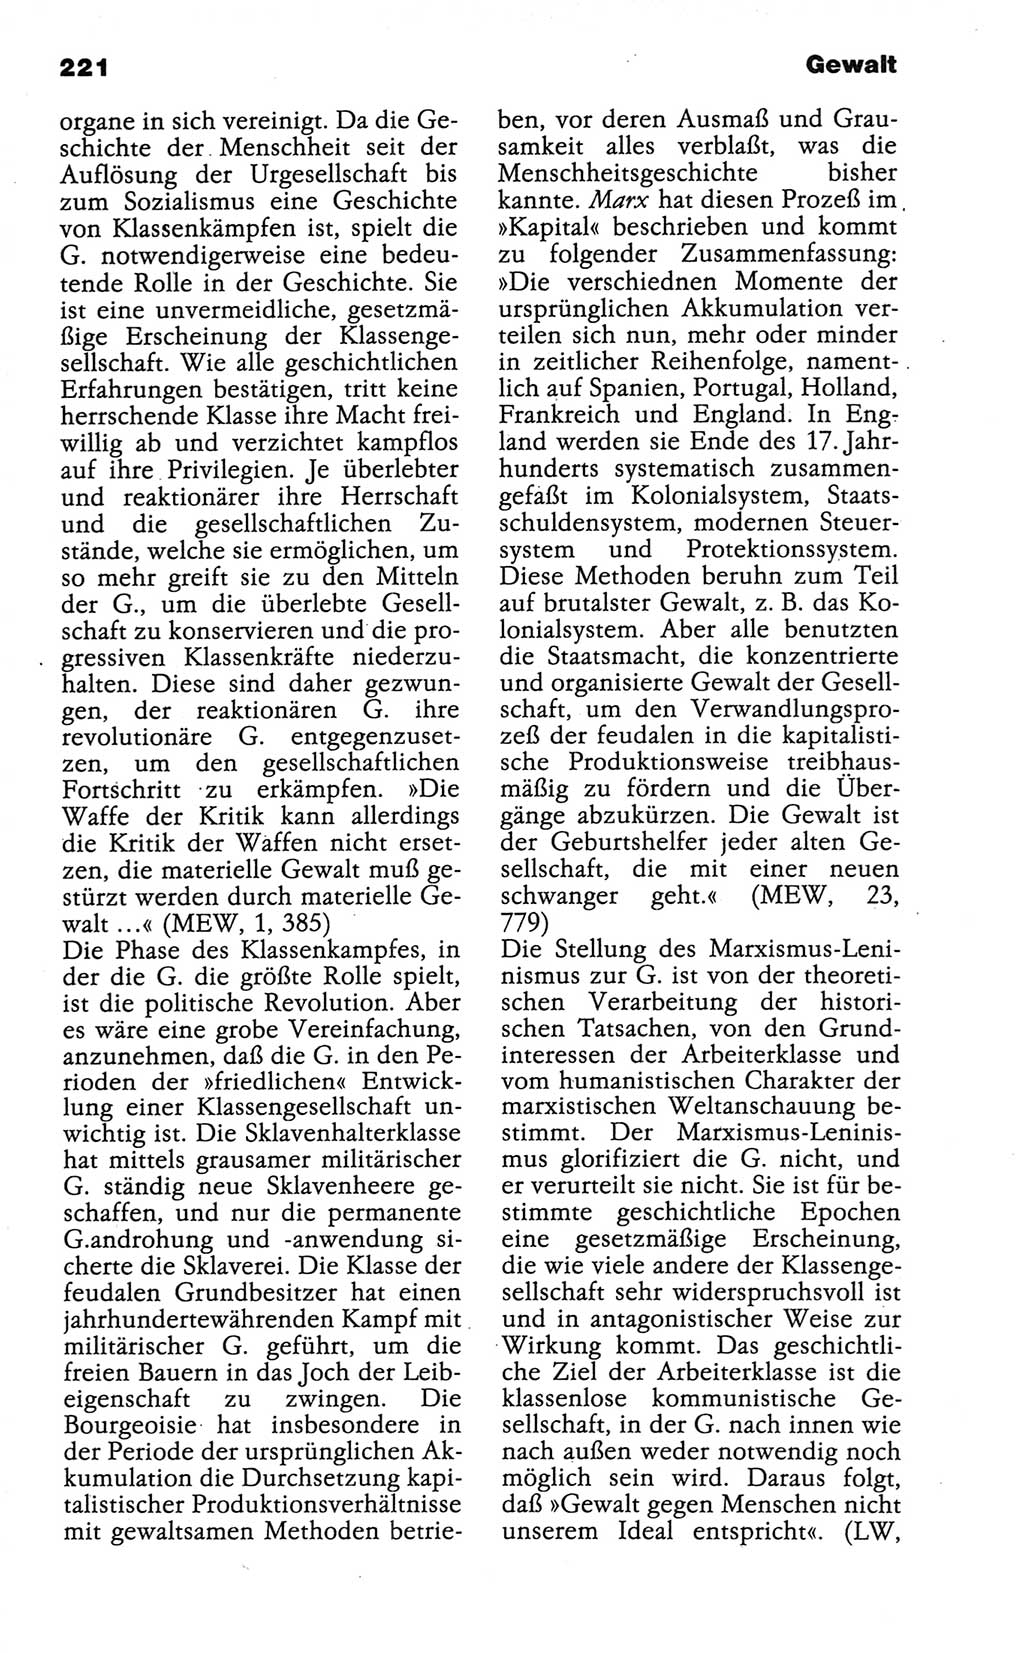 Wörterbuch der marxistisch-leninistischen Philosophie [Deutsche Demokratische Republik (DDR)] 1986, Seite 221 (Wb. ML Phil. DDR 1986, S. 221)